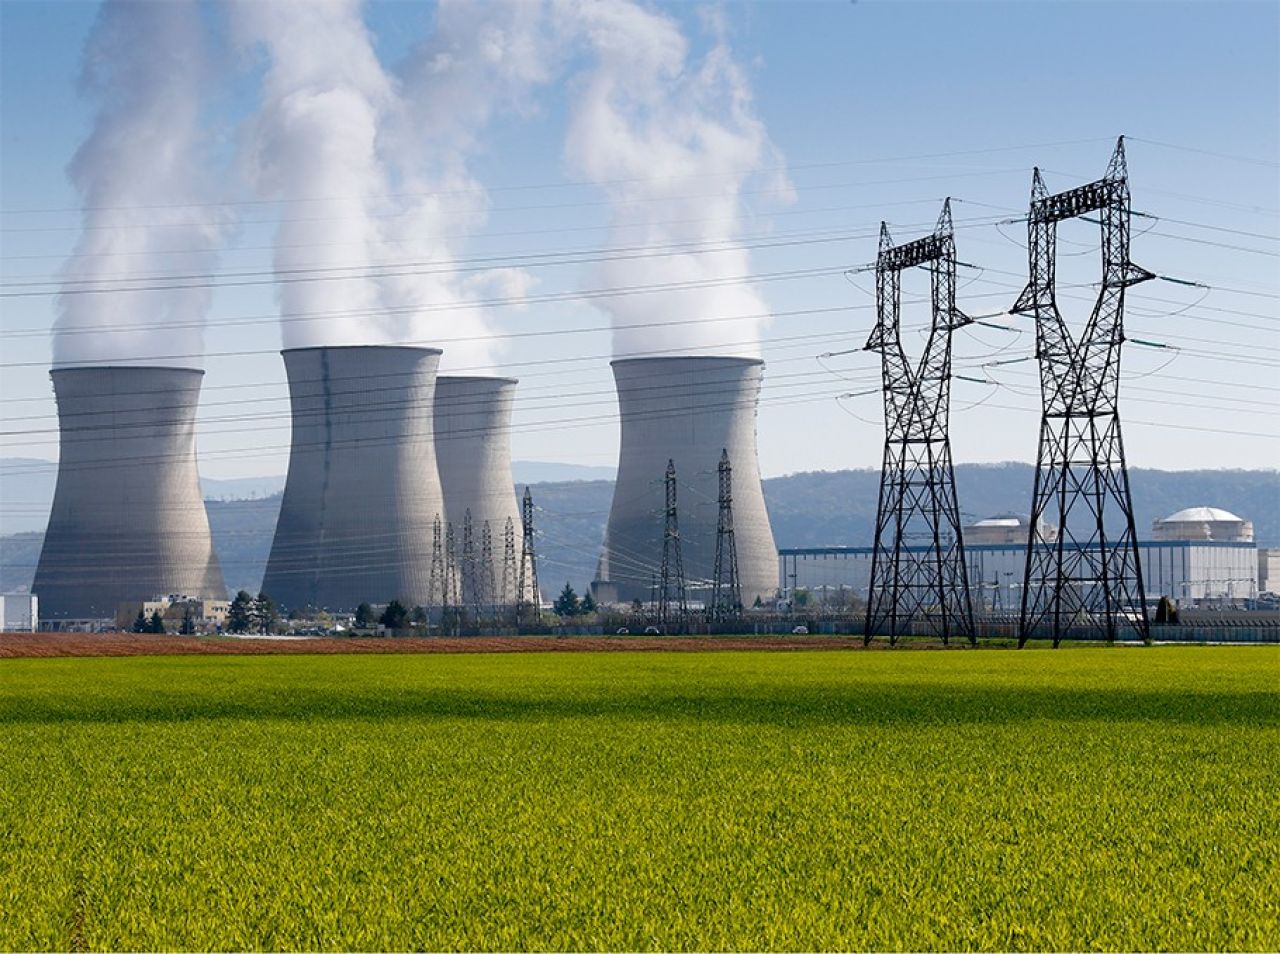 Երևանում կքննարկվի ատոմային էներգիայի դերը երկրի և ամբողջ տարածաշրջանի համար